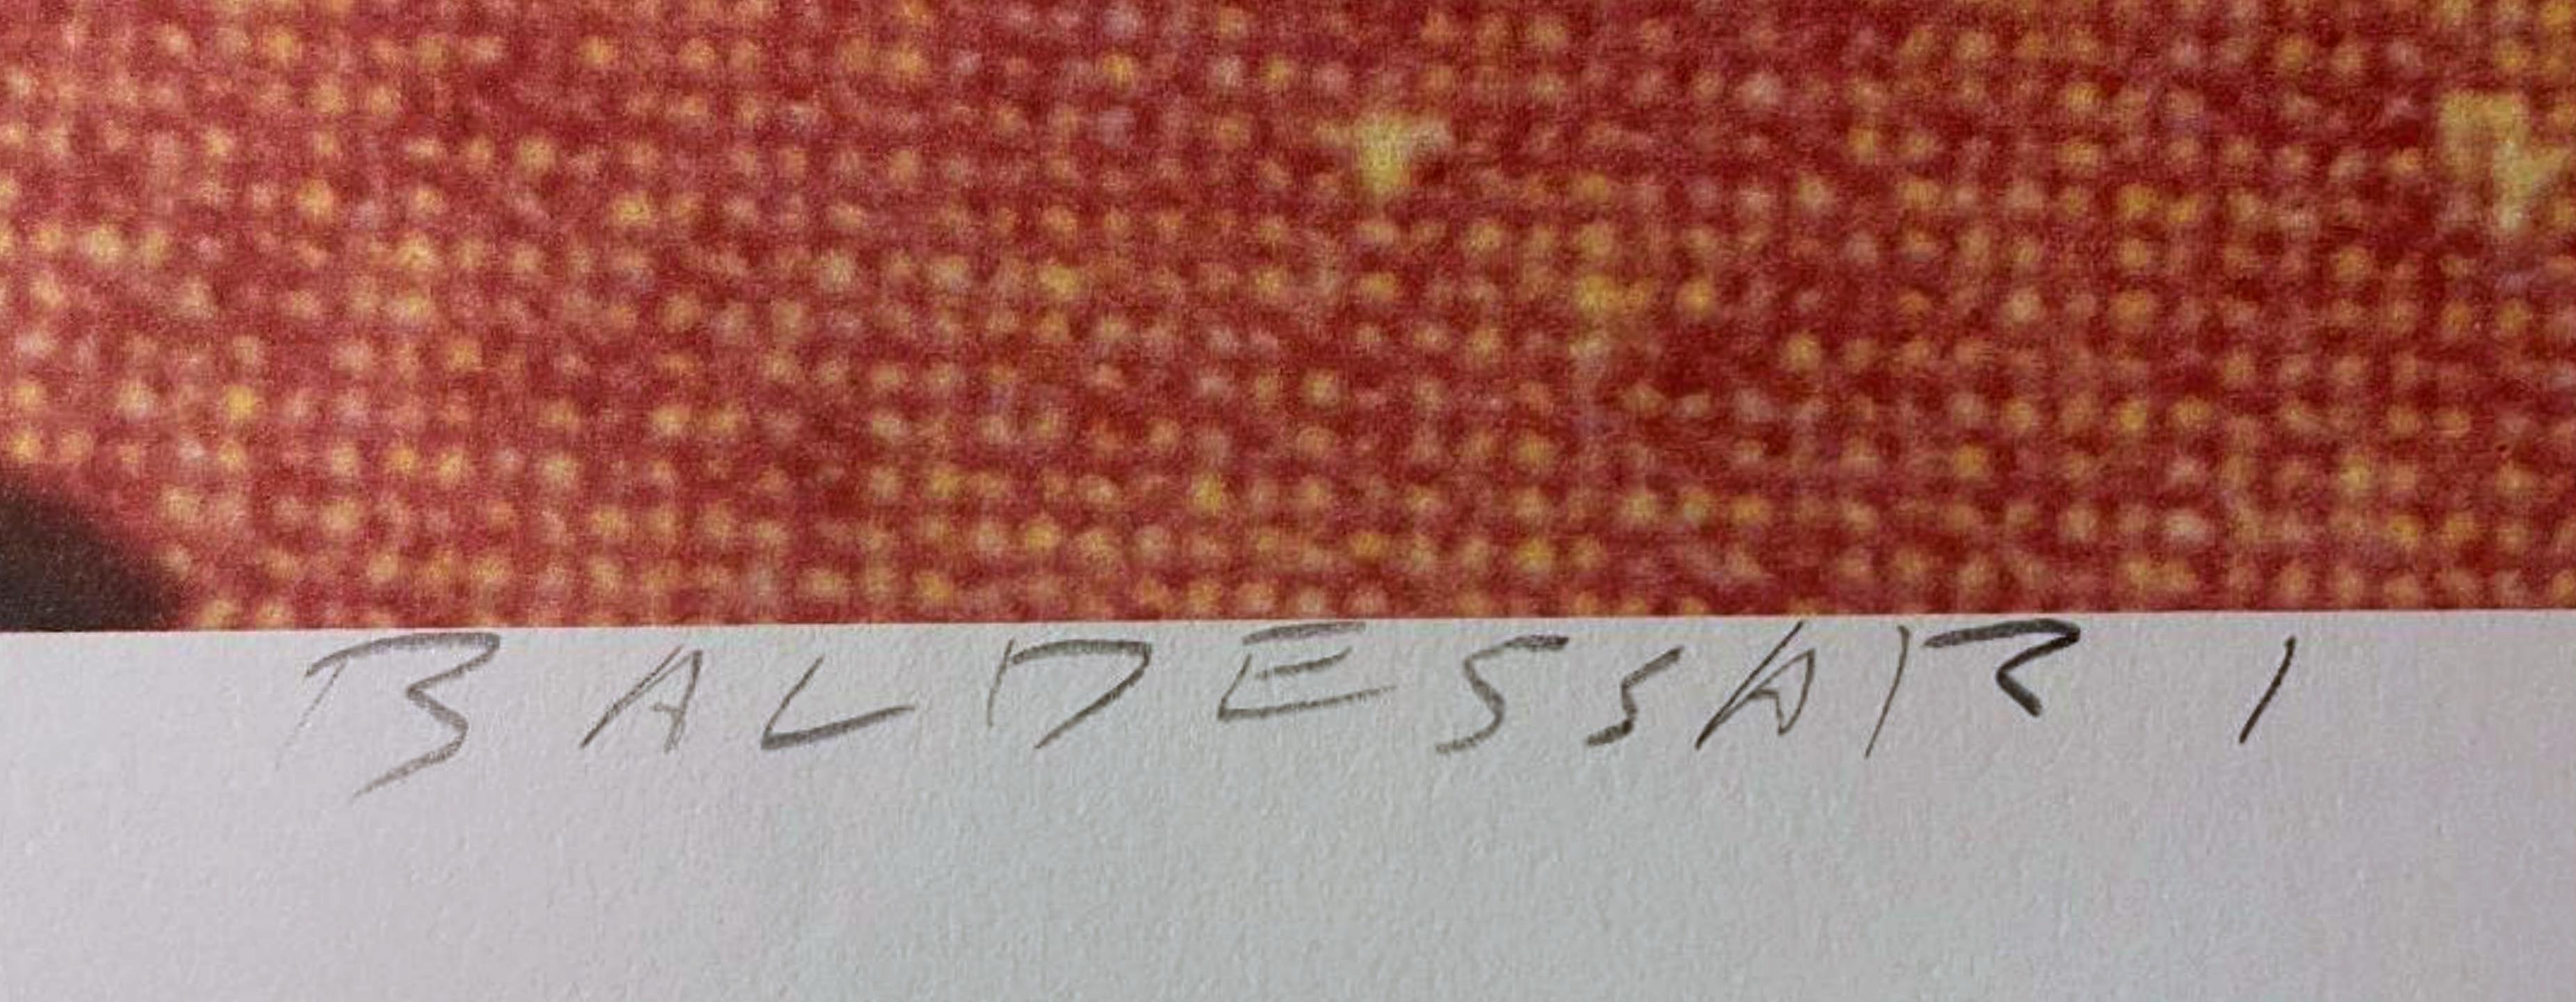 John Baldessari
Les sprinters, 1982
Lithographie offset en édition limitée sur papier Parsons's Diploma
Signé en graphite au recto. Accompagné d'une lettre d'authenticité de l'éditeur 
36 x 24 pouces
Non encadré
Accompagné d'une lettre